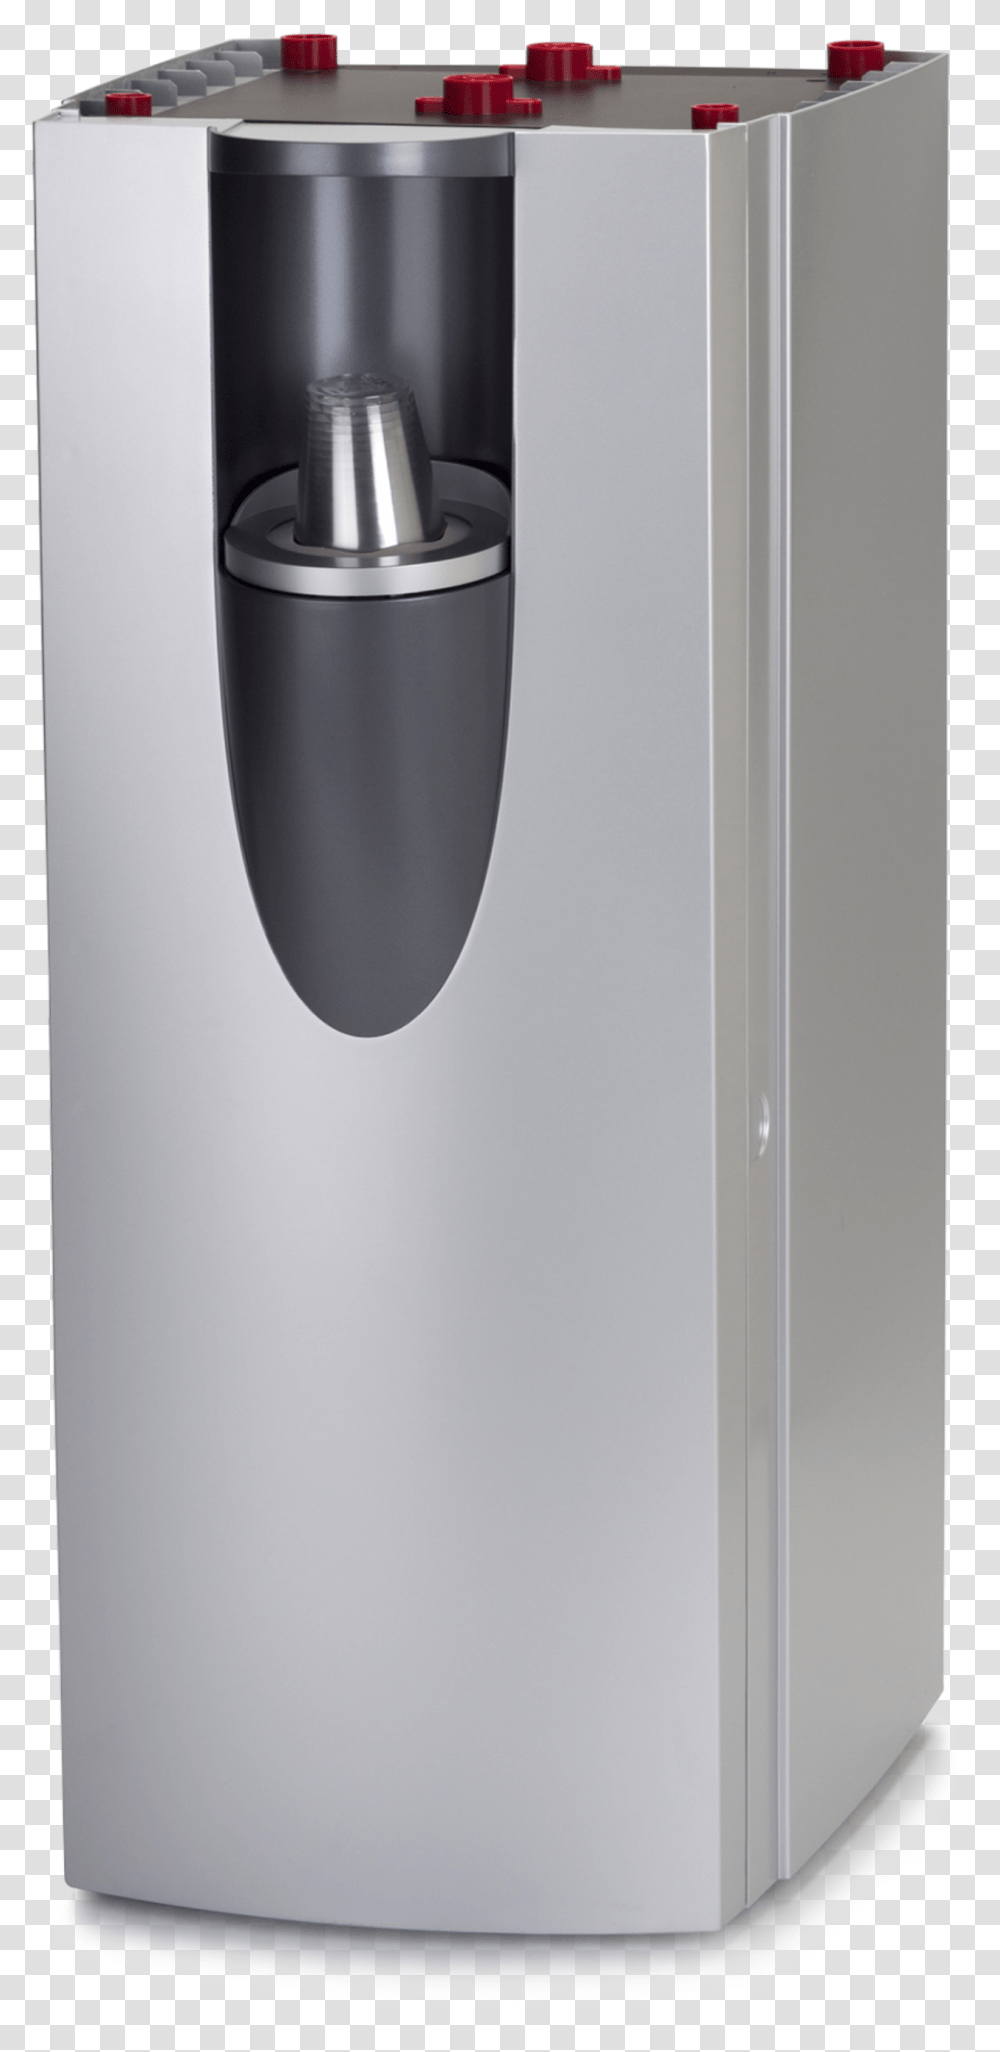 Ion Water Cooler, Appliance, Dishwasher, Bottle, Refrigerator Transparent Png